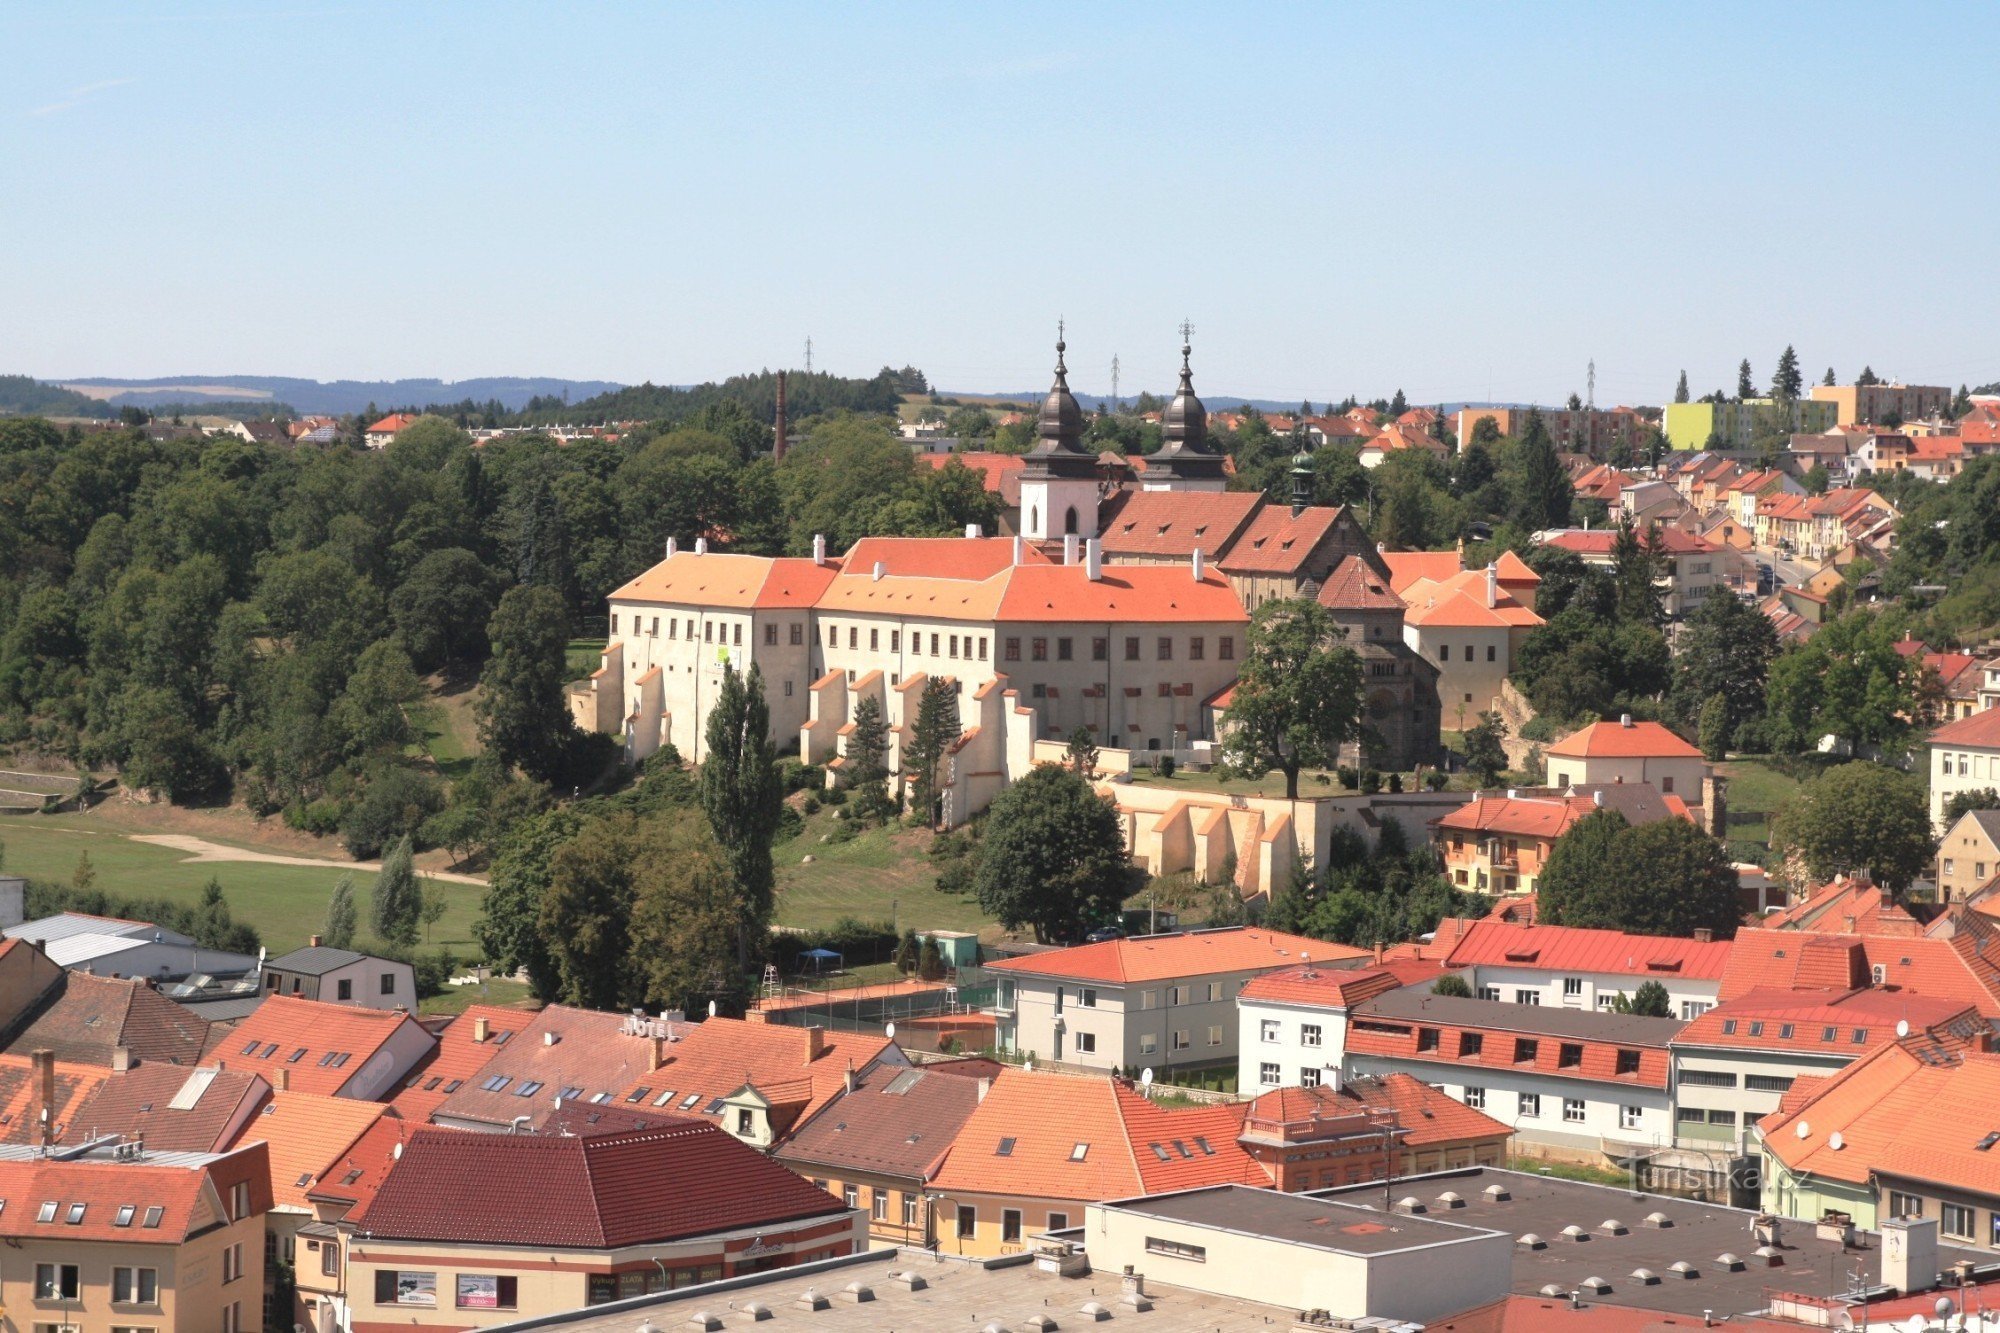 Kilátás a várra és a bazilikára a torony folyosójáról